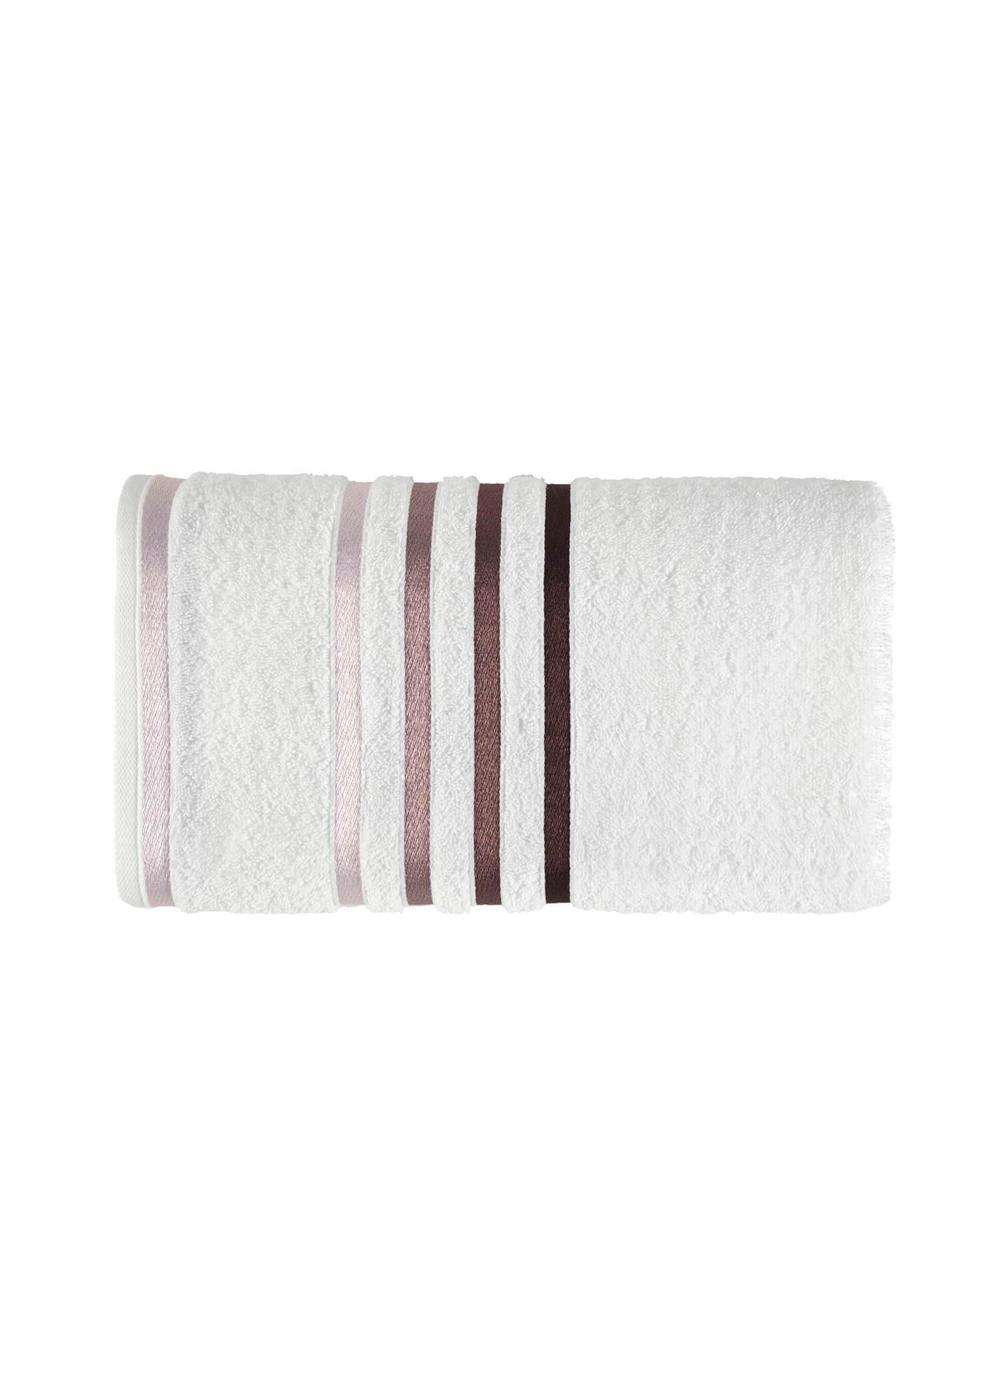 Toalha de Banho Lumina branco/roxa - Karsten